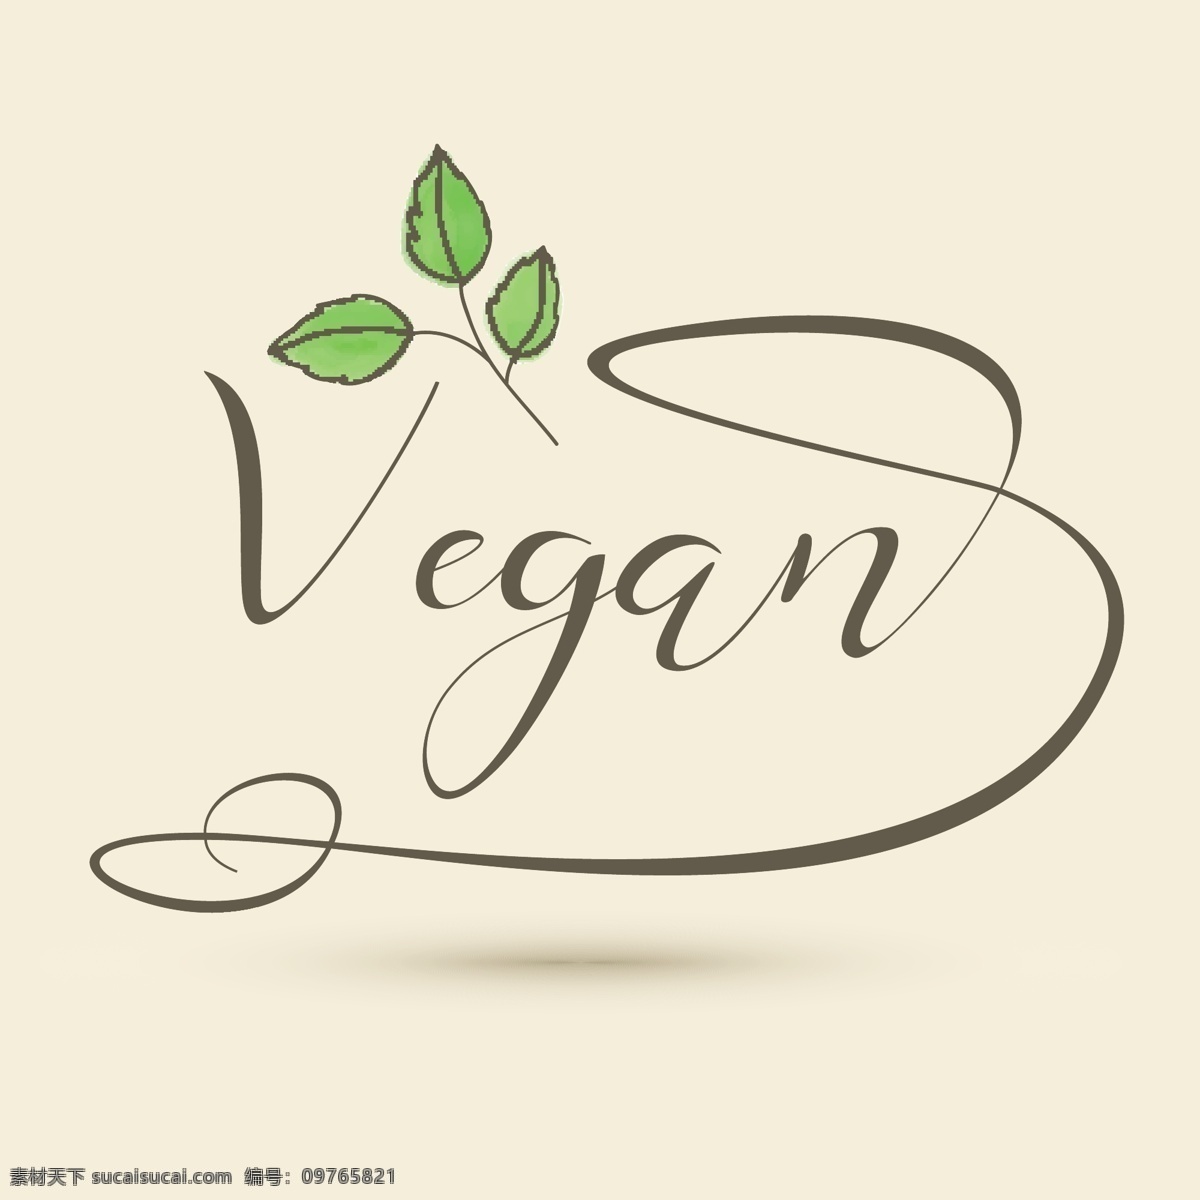 手绘 装饰 素食 标志 标识 业务 水彩 叶 生态 企业 公司 品牌 有机 绘画 健康 符号 身份 饮食 素食主义者